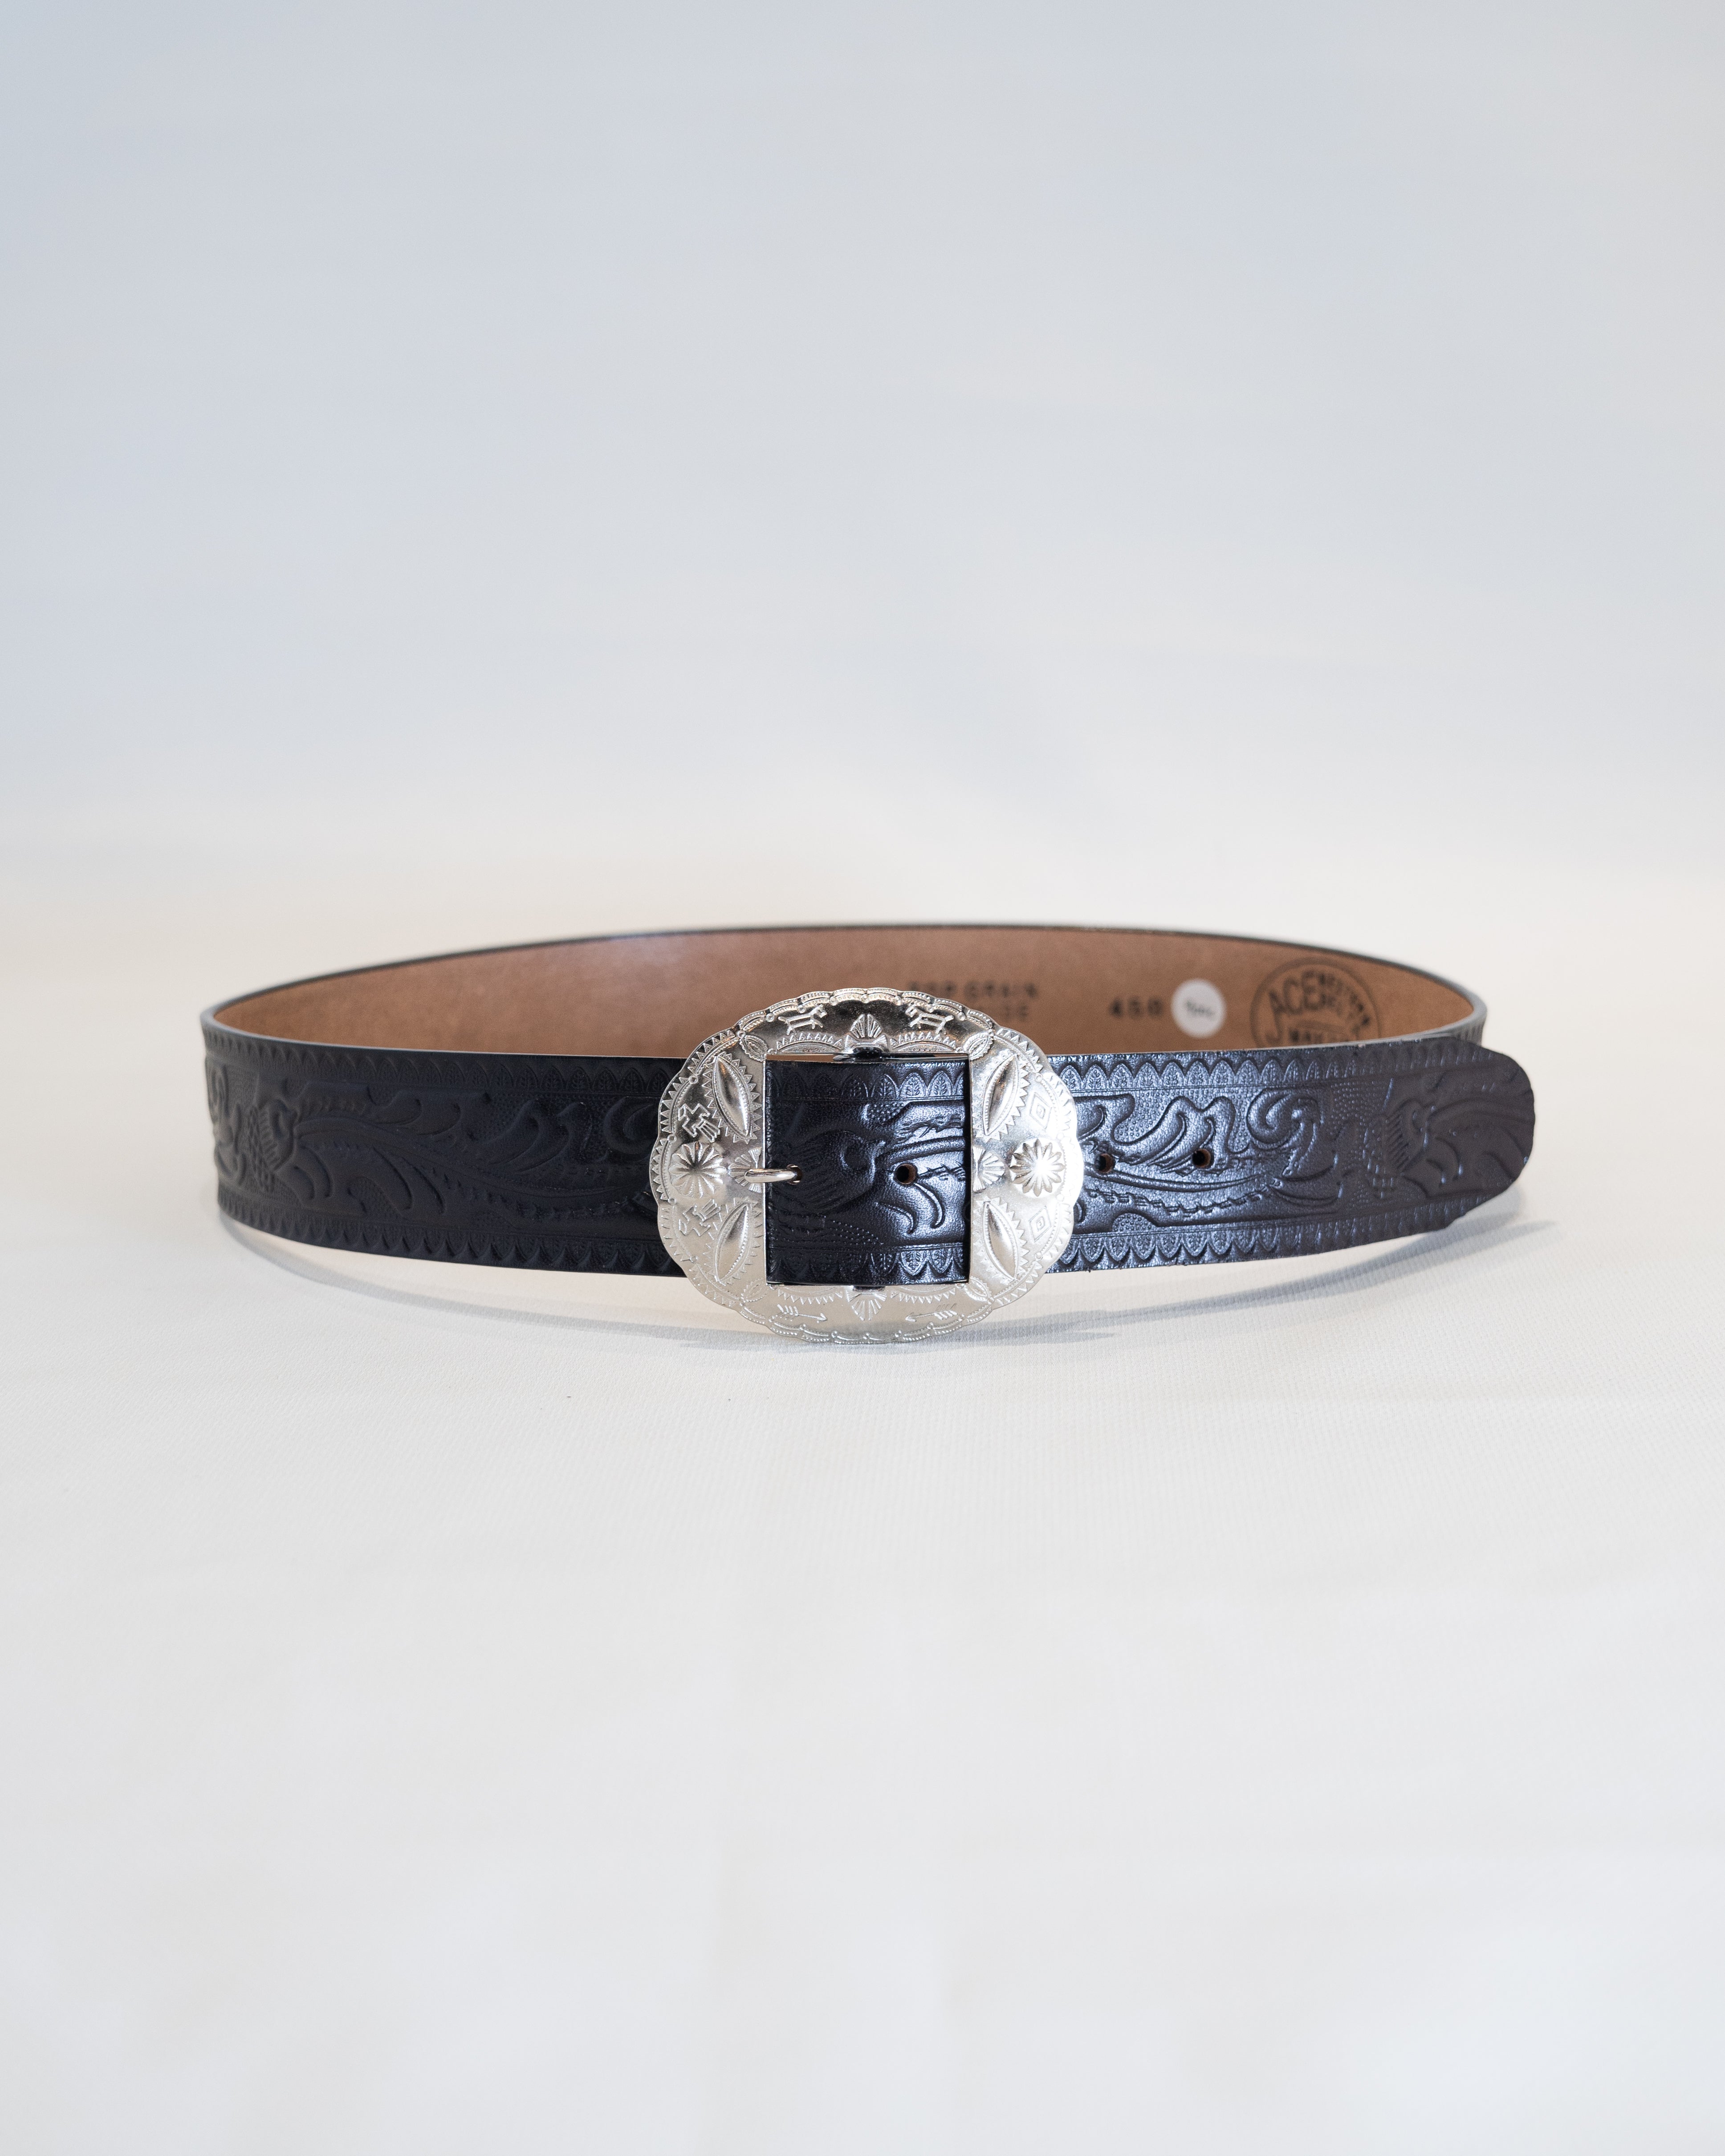 ACE Belts No. 900C 1 1/2 Belt | Brown